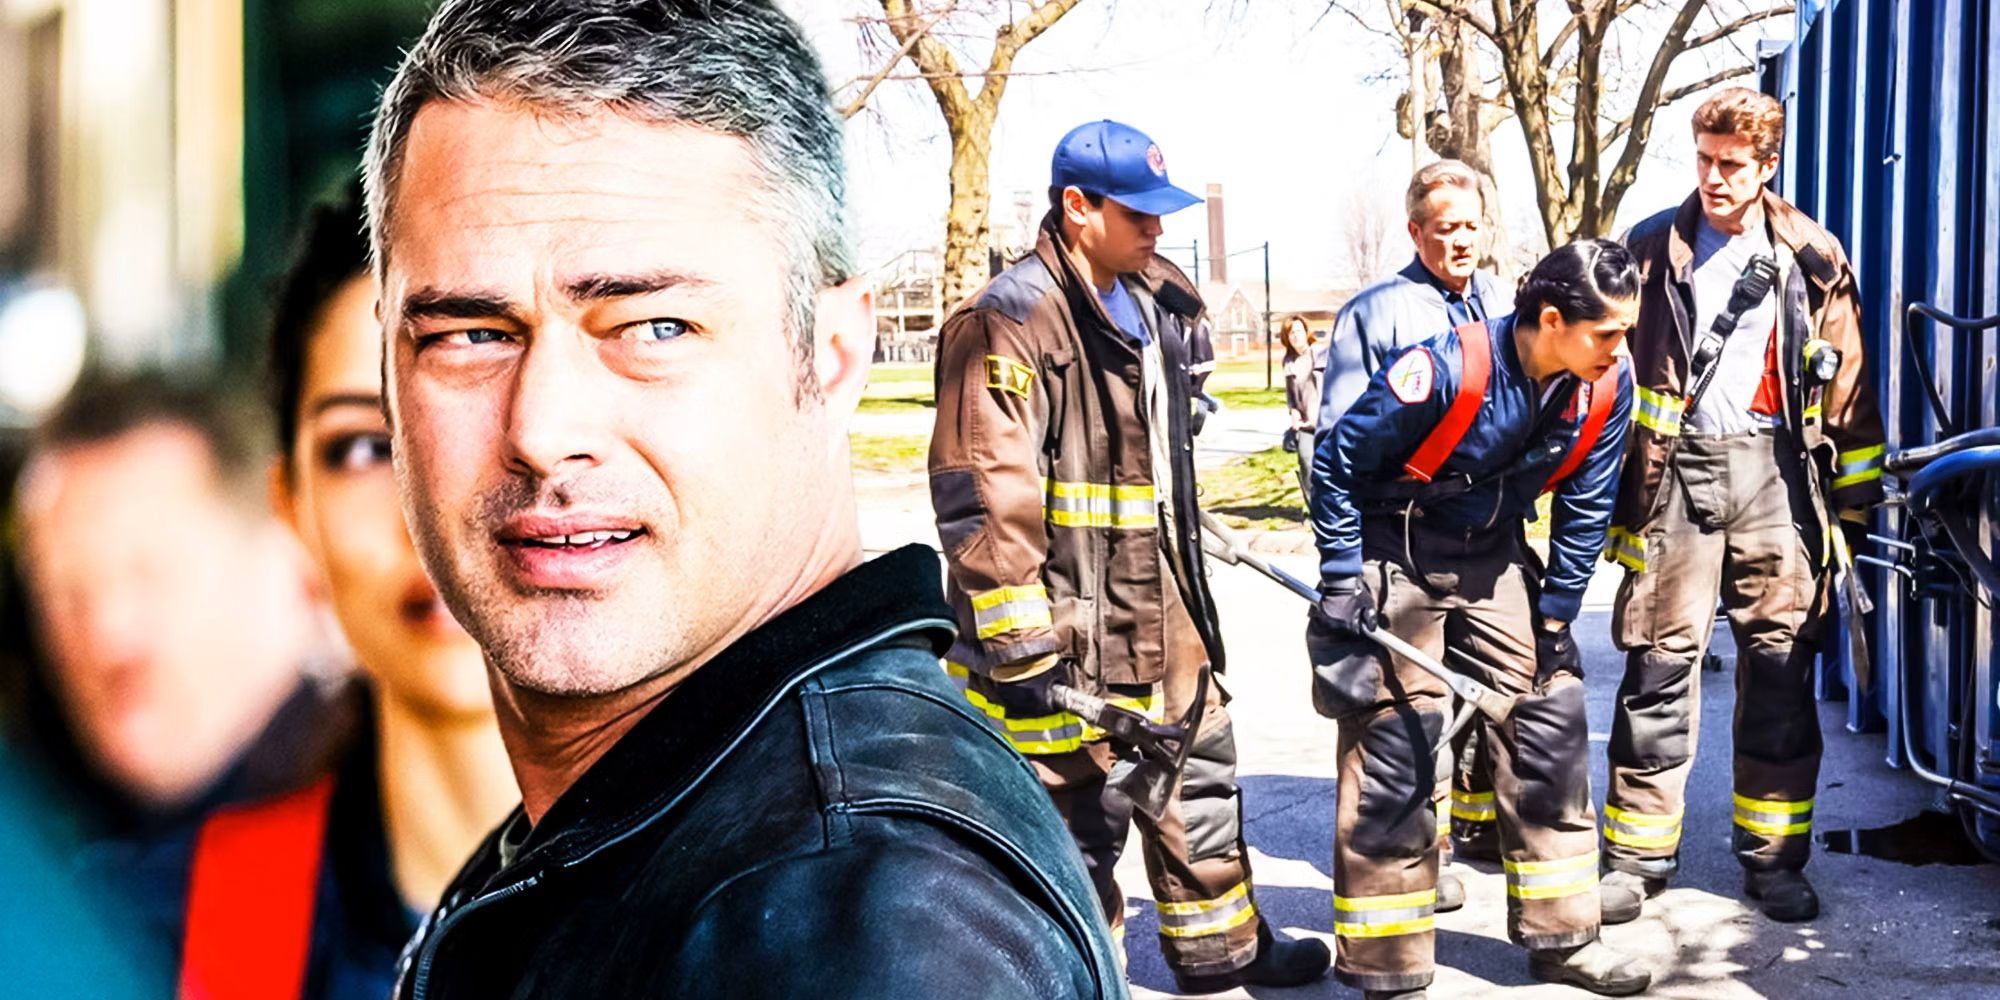 Chicago Fire Season 11 Showrunner Teases Severide & Kidd Troubles